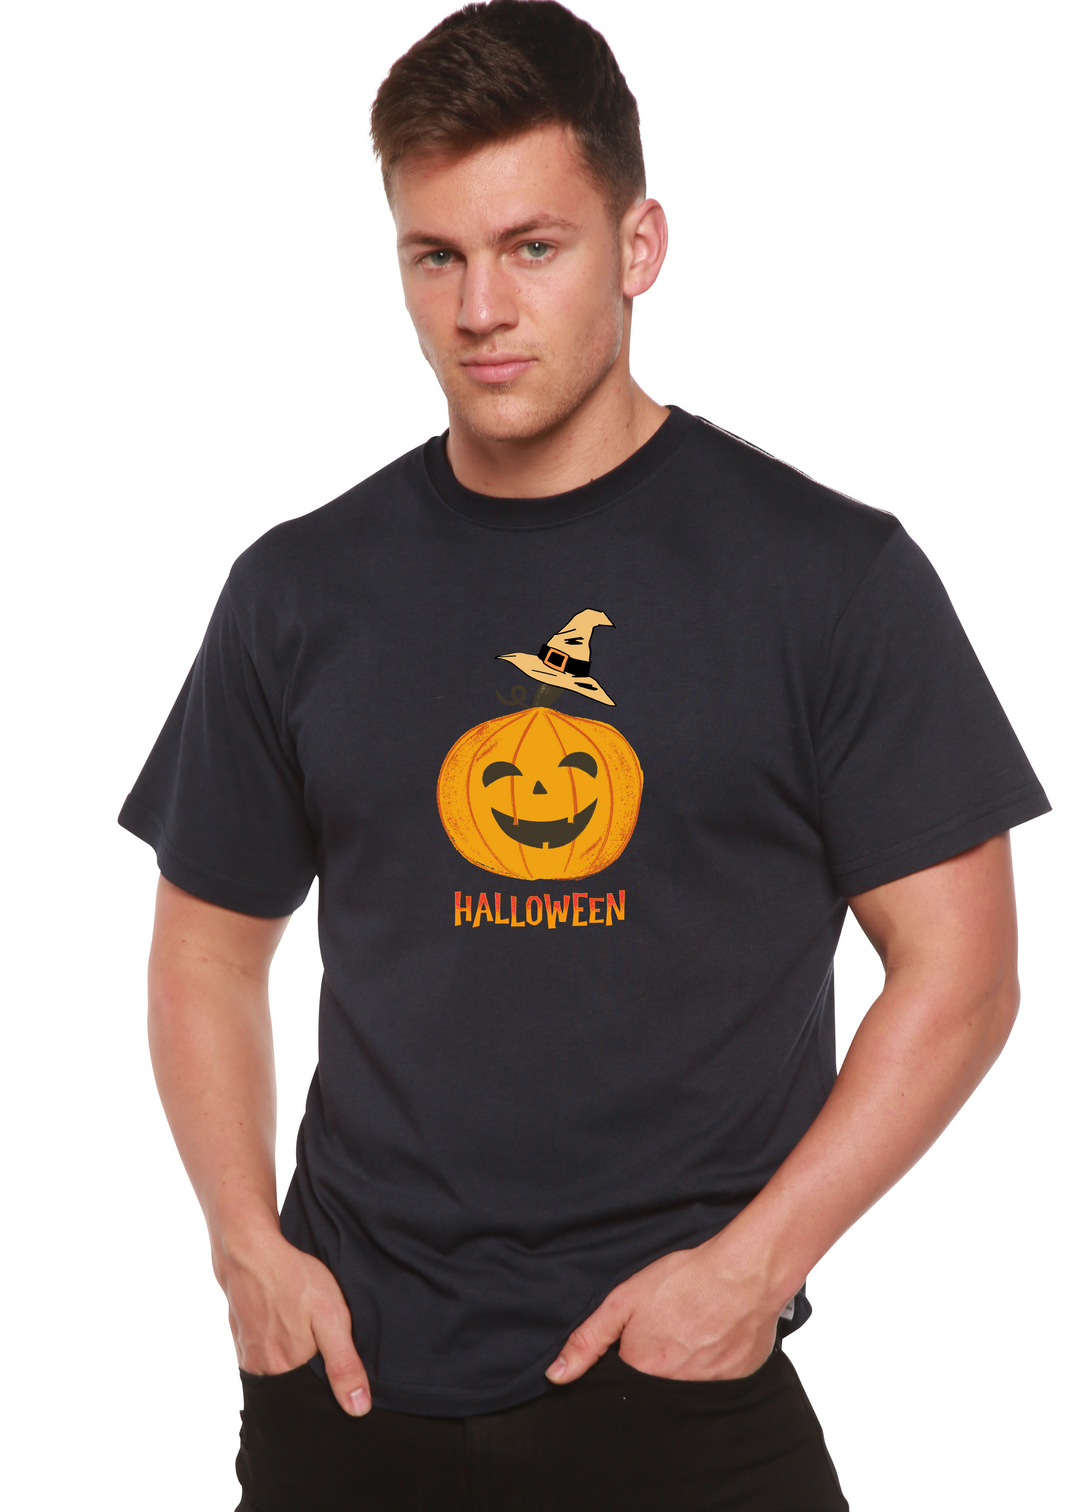 Halloween Pumpkin Unisex Graphic Bamboo T-Shirt navy blue